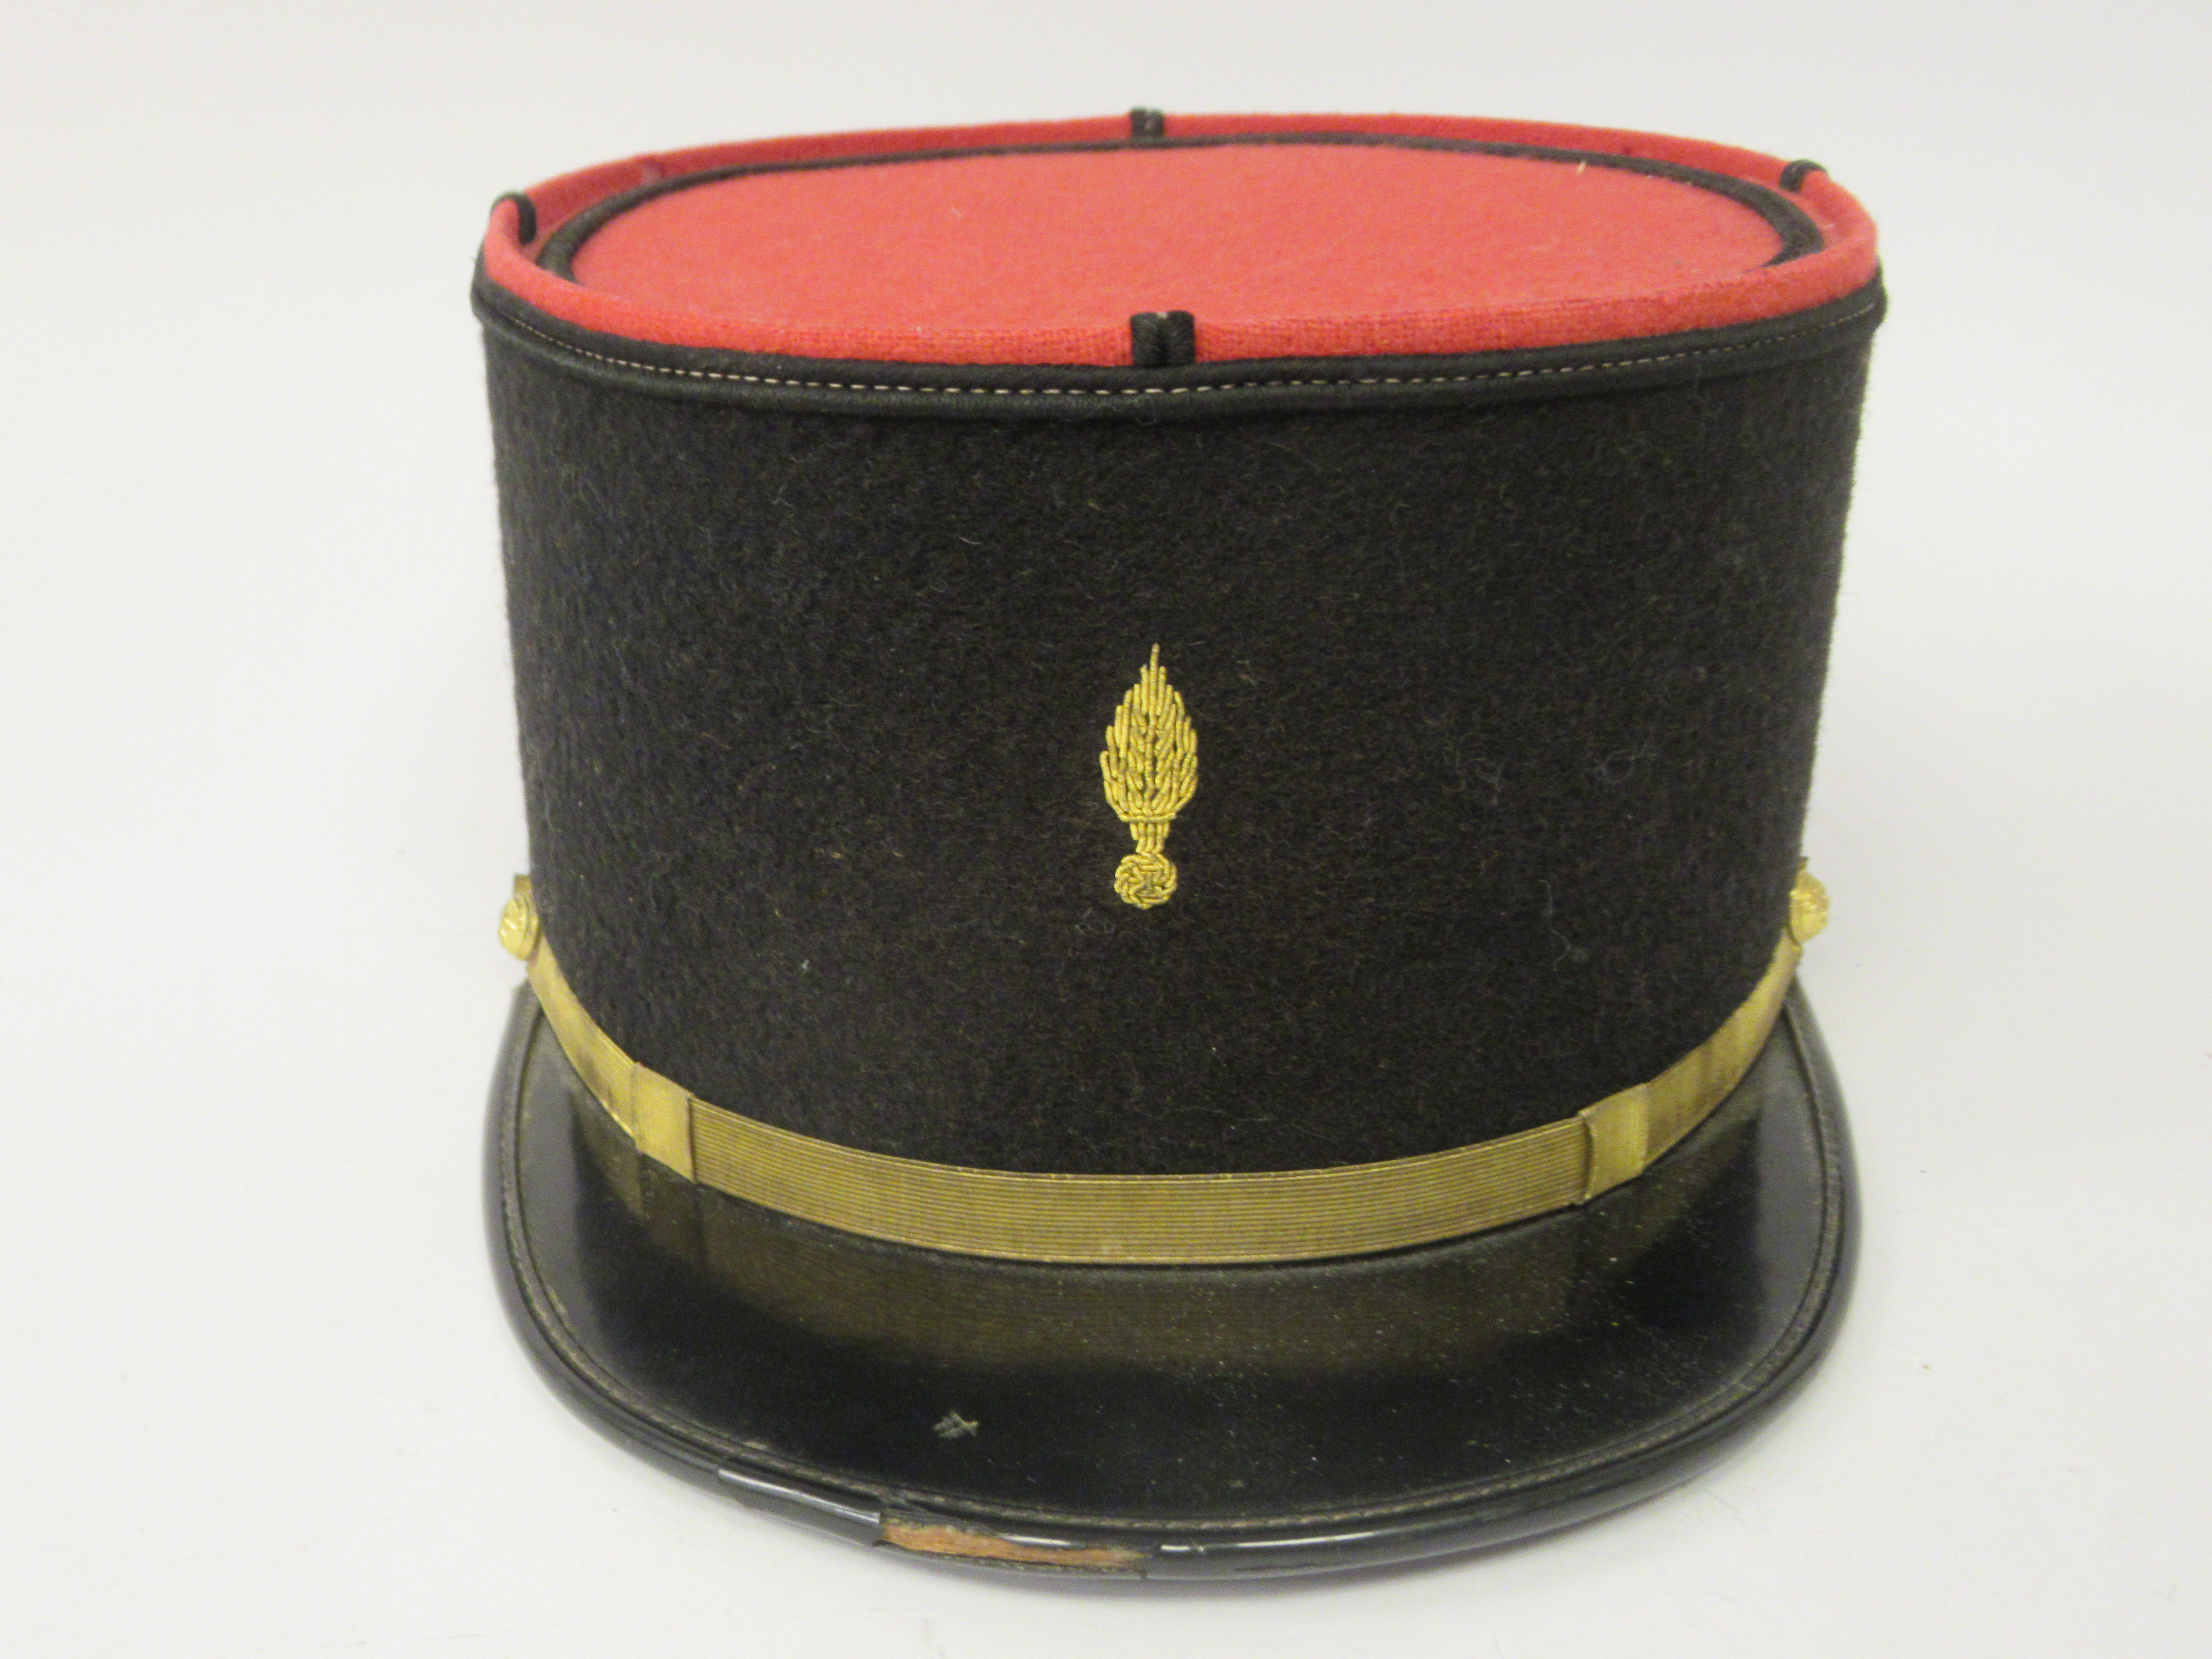 A vintage French Gendarme's black and red, peaked kepi